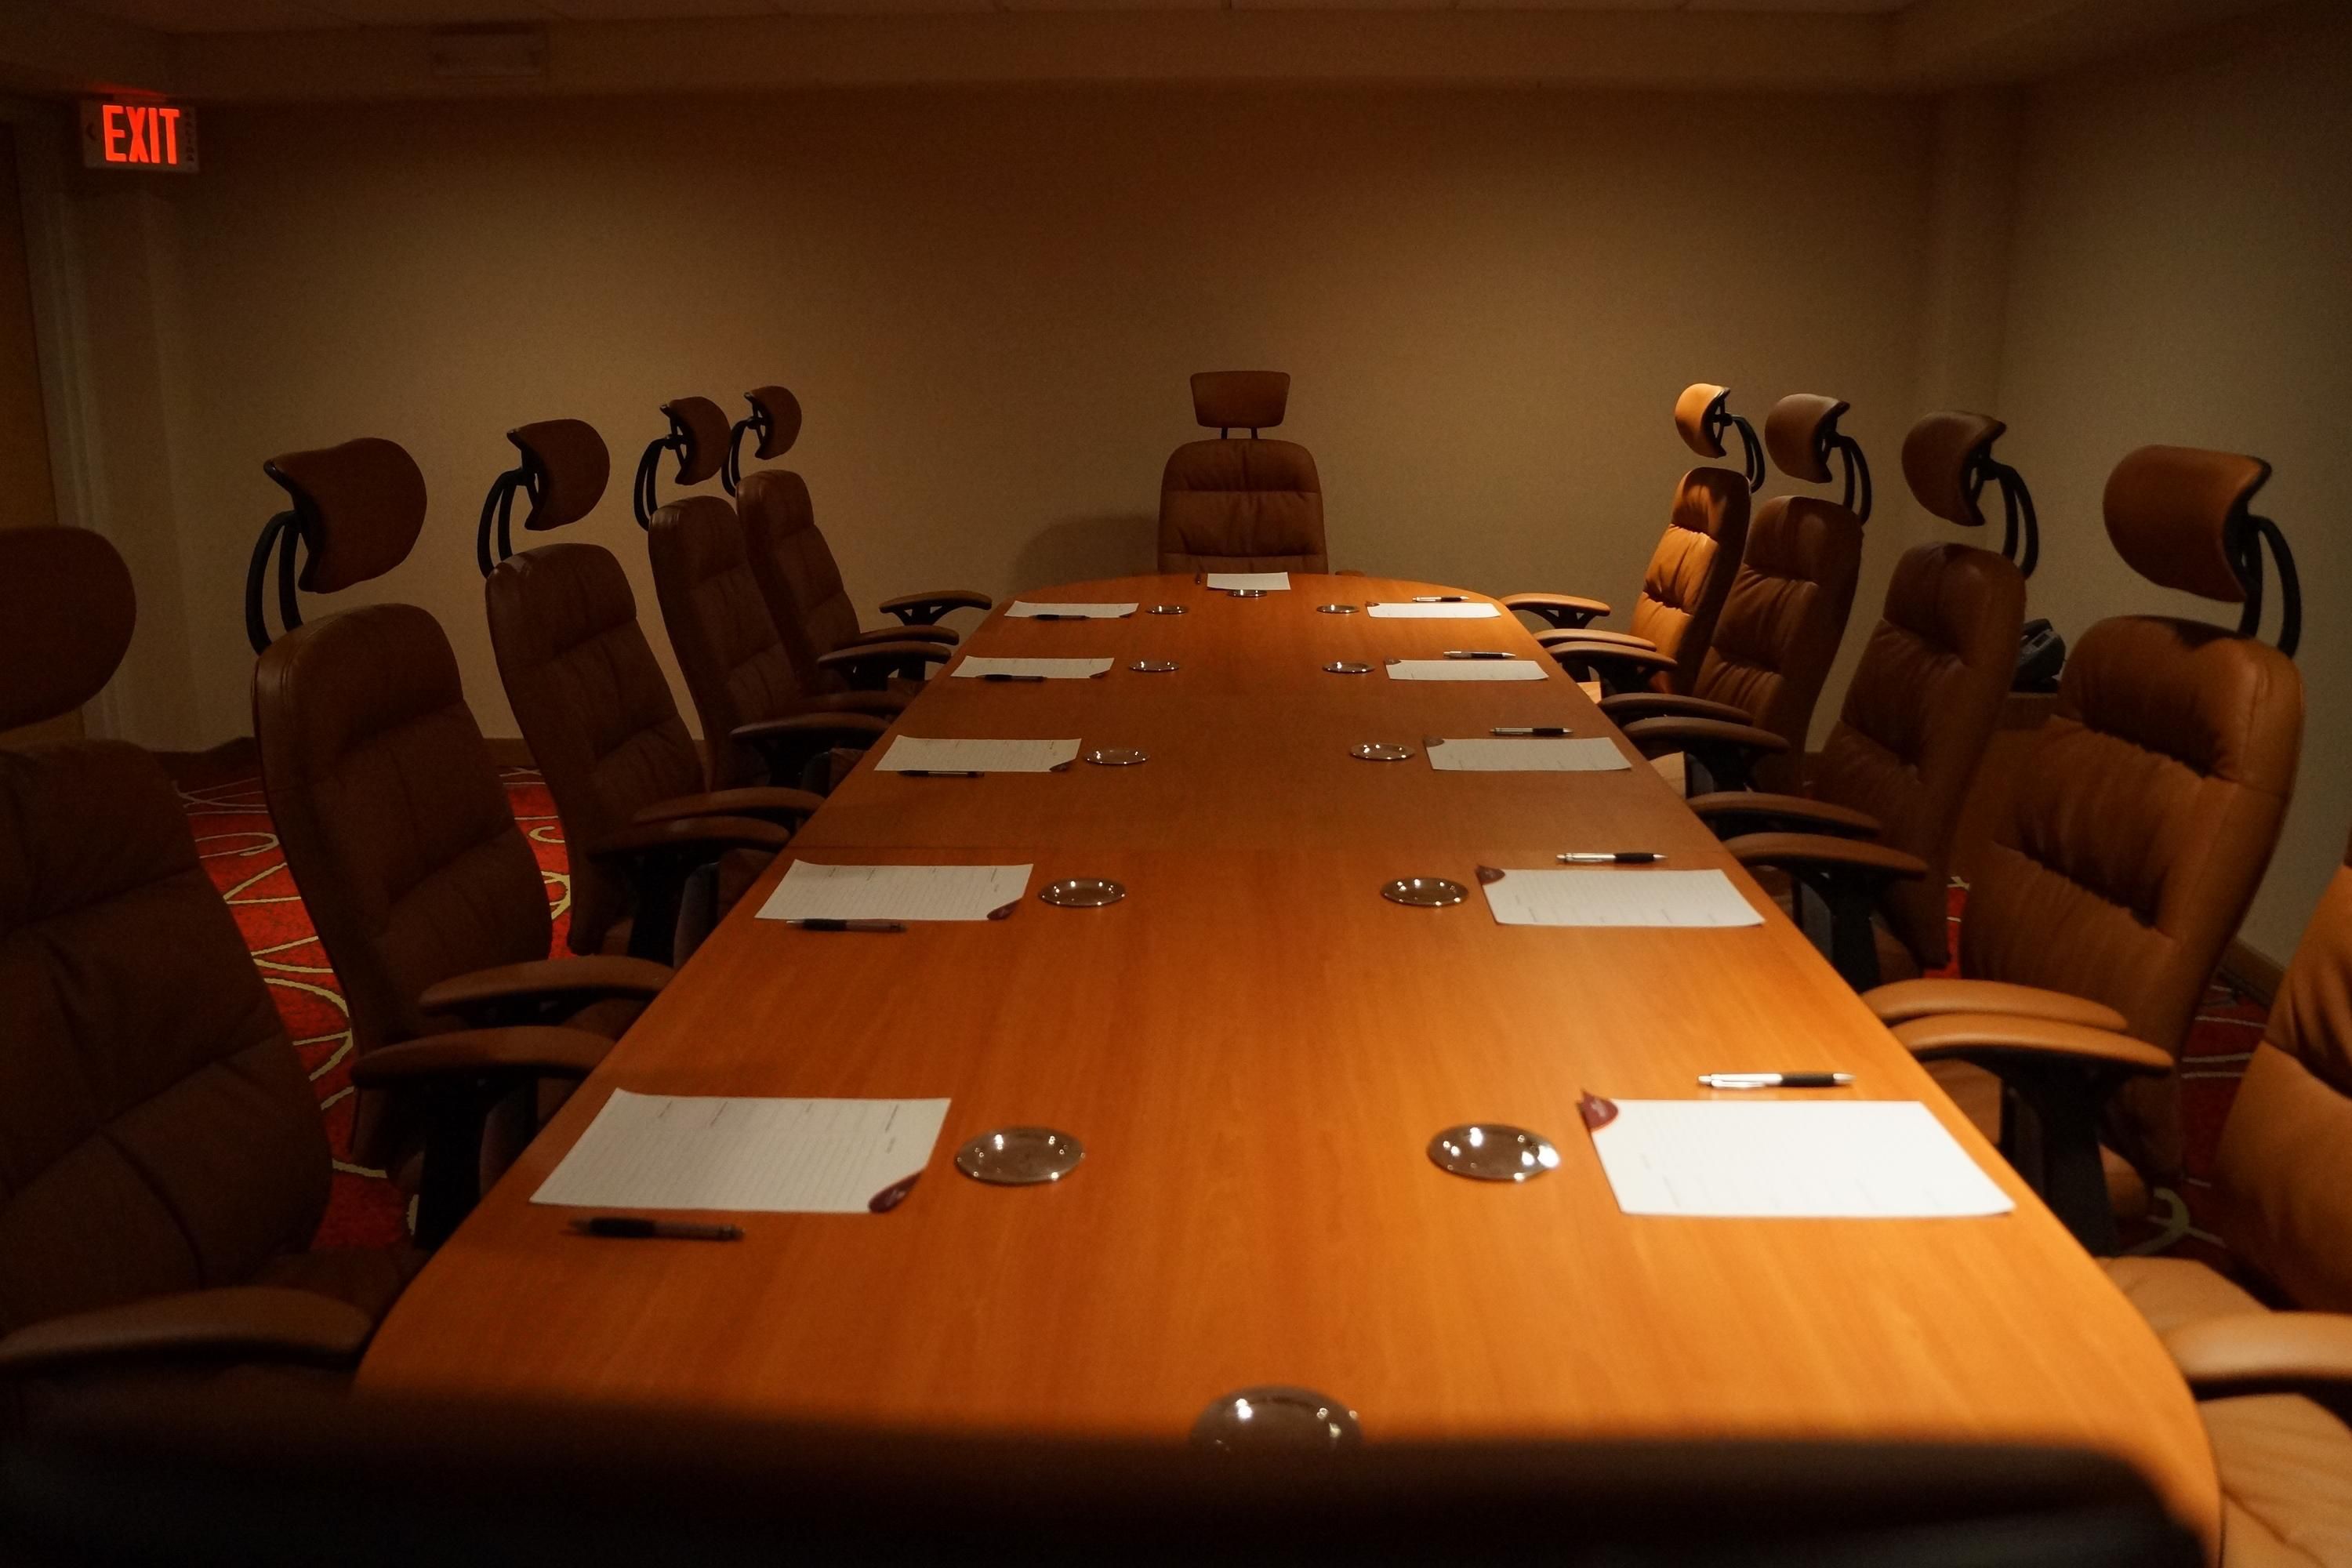 Executive board room